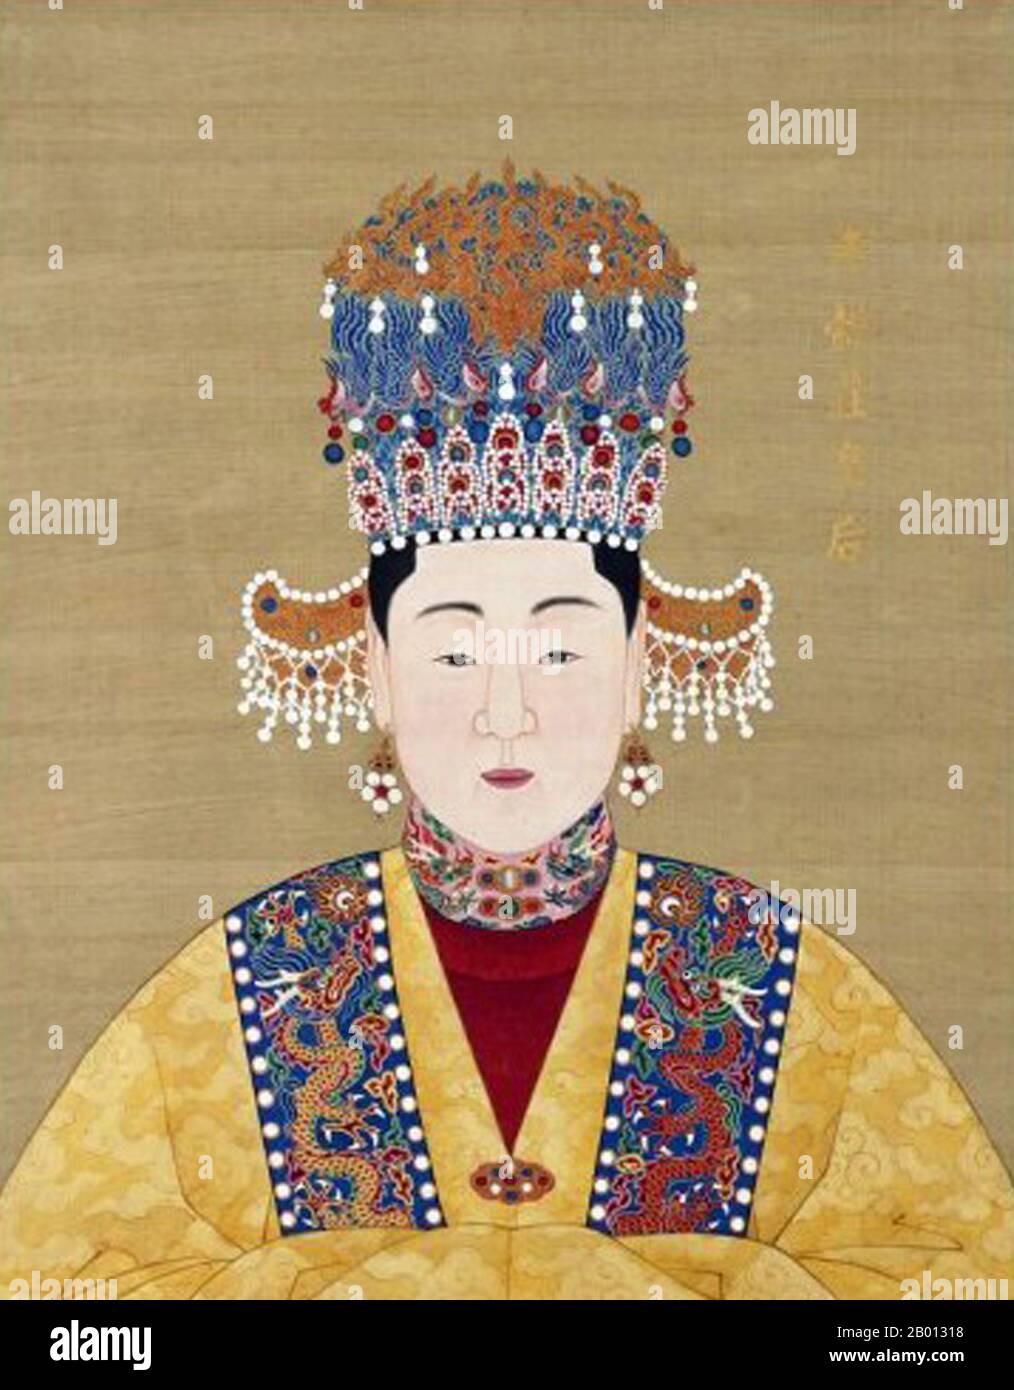 China: Kaiserin Xiao Yi Zhuang (-1558), Gemahlin des 13. Ming-Imperators Longqing (r. 1567-1572). Hängende Schriftrolle, 16.-17. Jahrhundert. Kaiserin Xiaoyizhuang war die erste Gemahlin des Longqing-Imperators der Ming-Dynastie. Sie heiratete den Kaiser im Jahr 1553 und gebar ihm drei Kinder, starb aber im Jahr 1558. Stockfoto